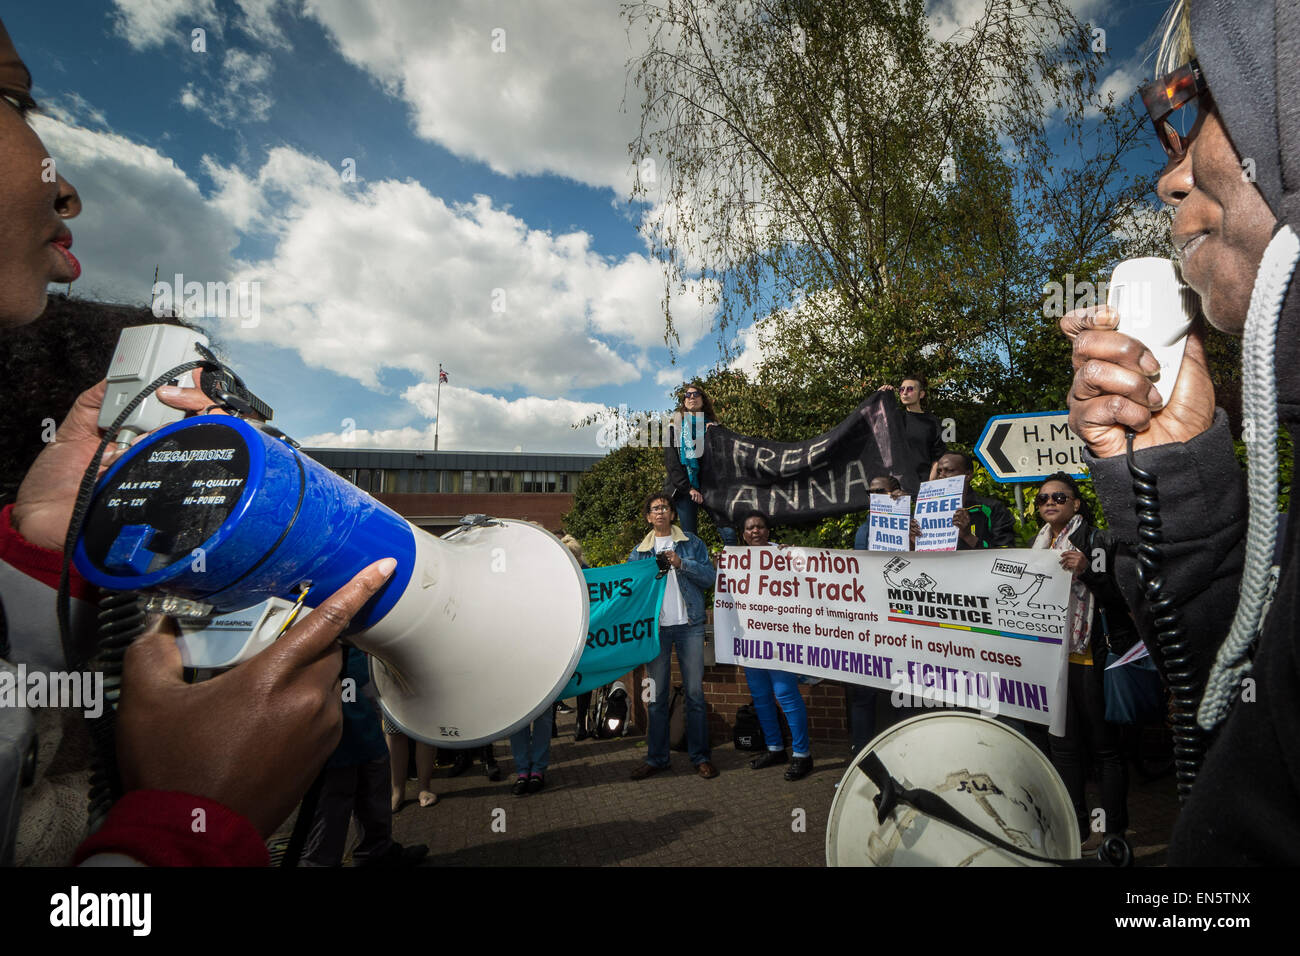 Londres, Royaume-Uni. 28 avril, 2015. Mouvement pour la justice manifestation devant la prison de Holloway Crédit : Guy Josse/Alamy Live News Banque D'Images